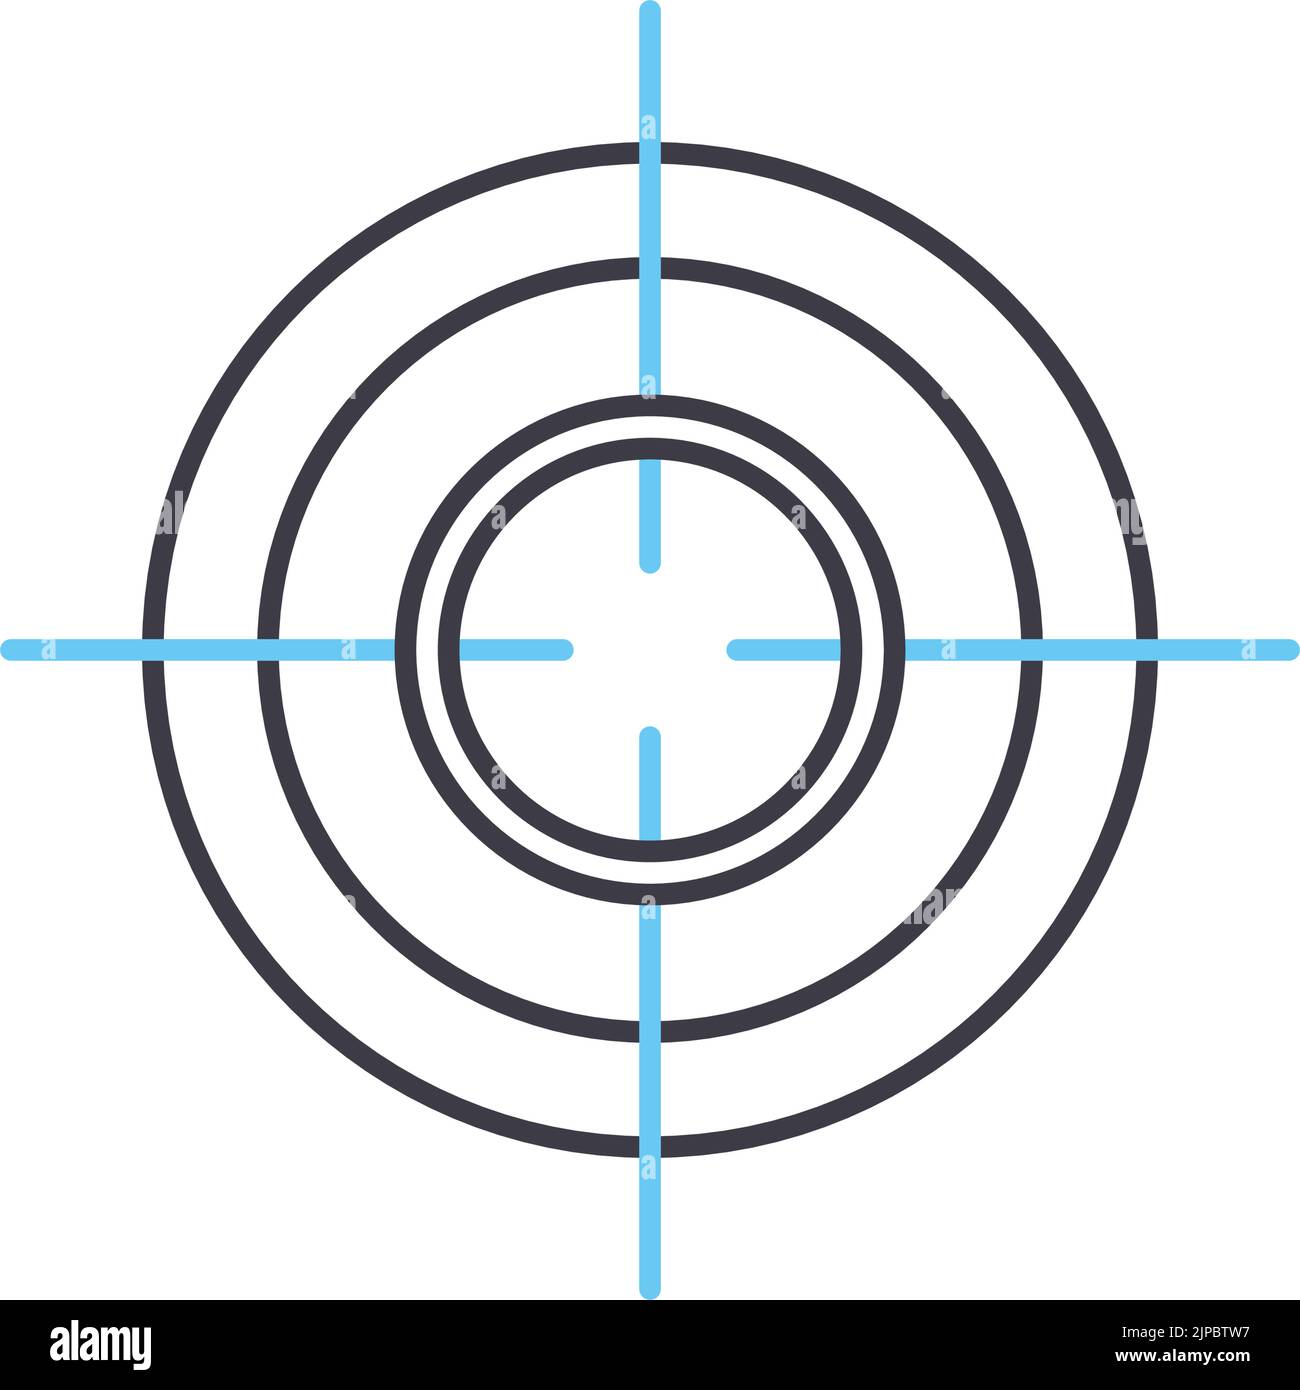 Zielposition Liniensymbol, Umrisssymbol, Vektordarstellung, Konzeptschild Stock Vektor